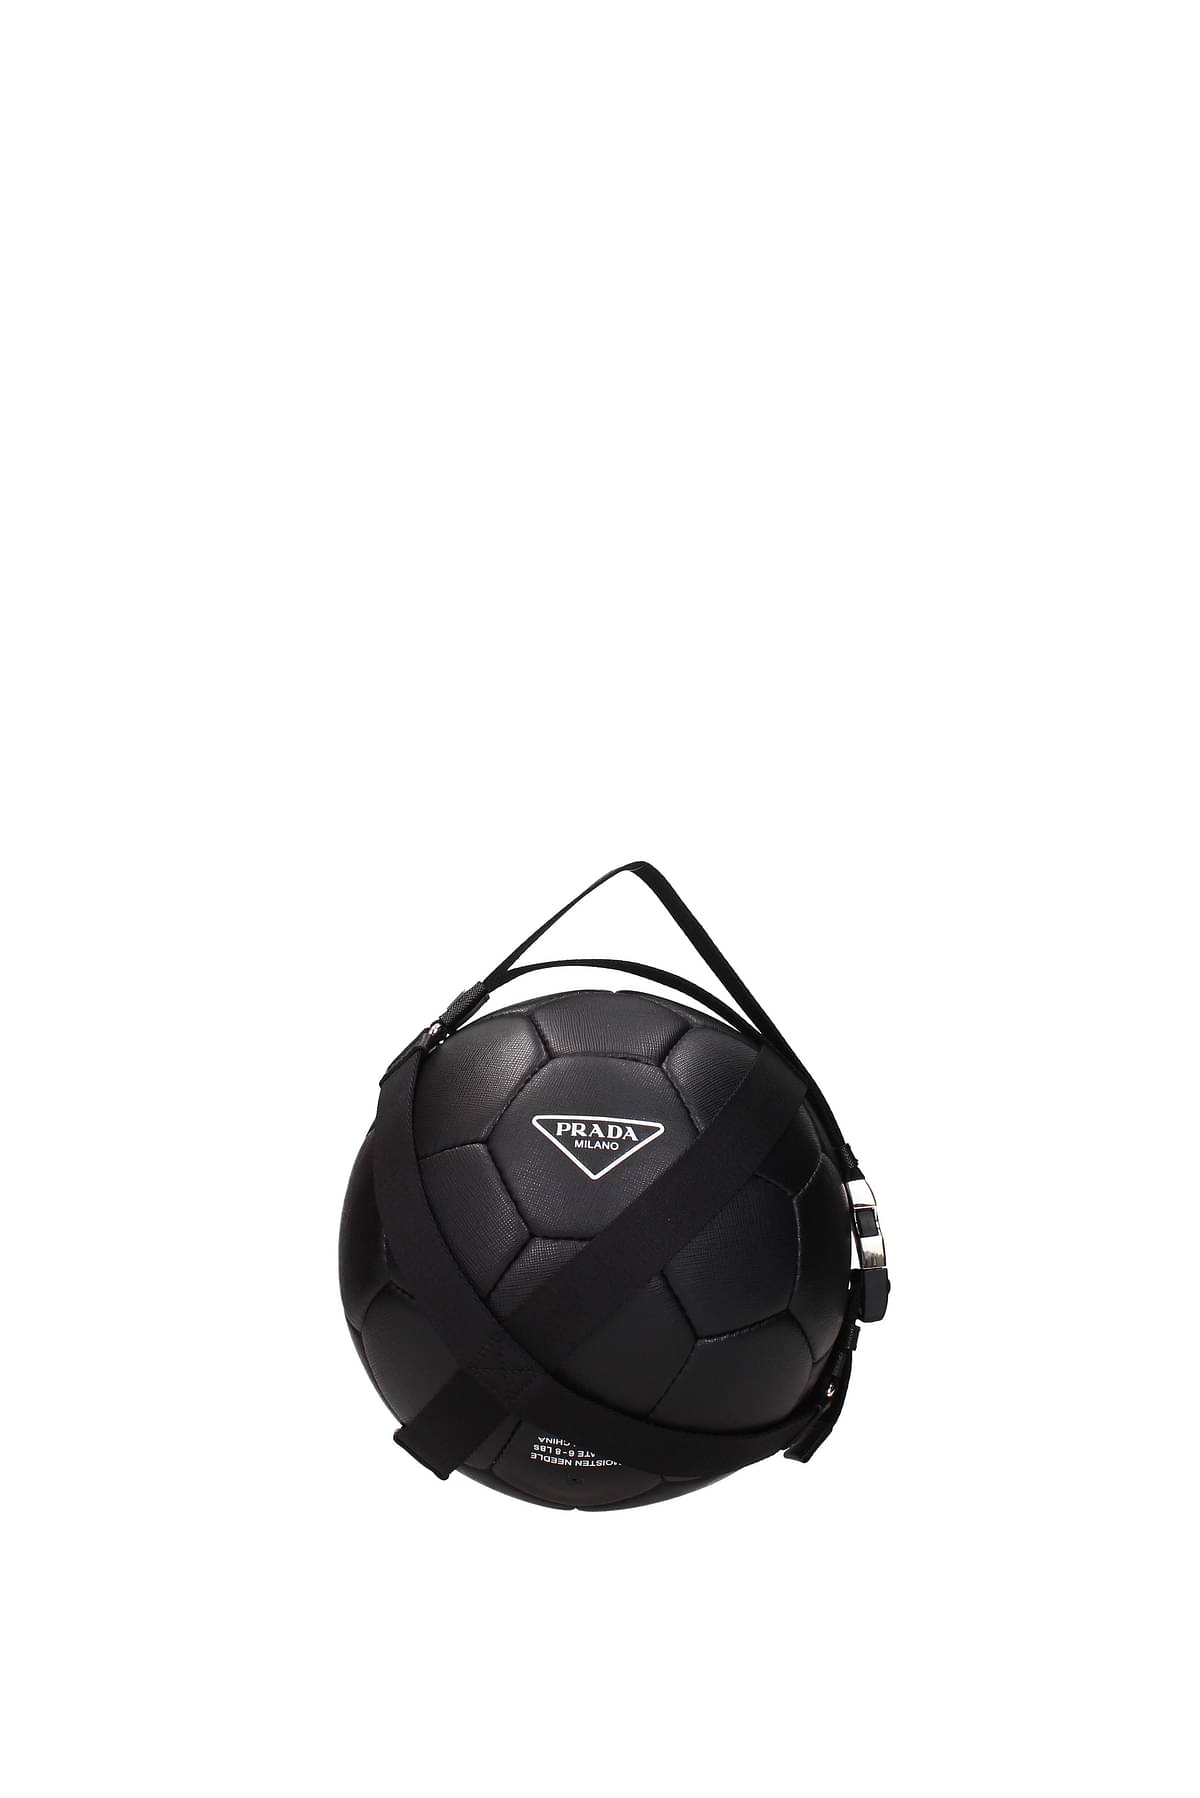 Prada Gift ideas soccer ball Men 2XD0302D1AF0002 Leather 434€